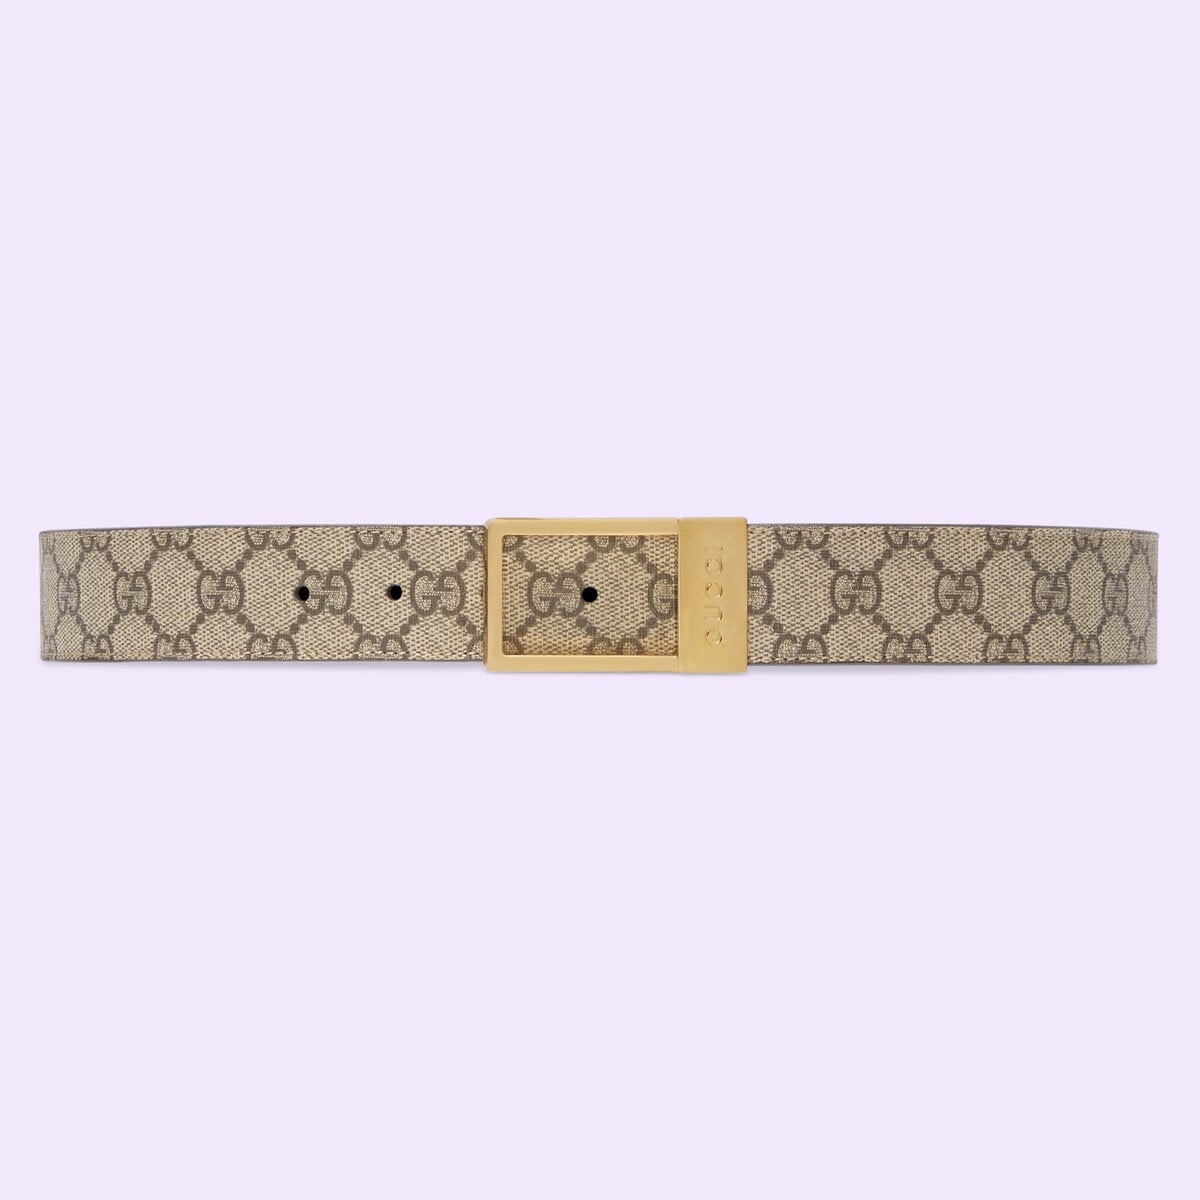 GG belt with rectangular buckle - 1